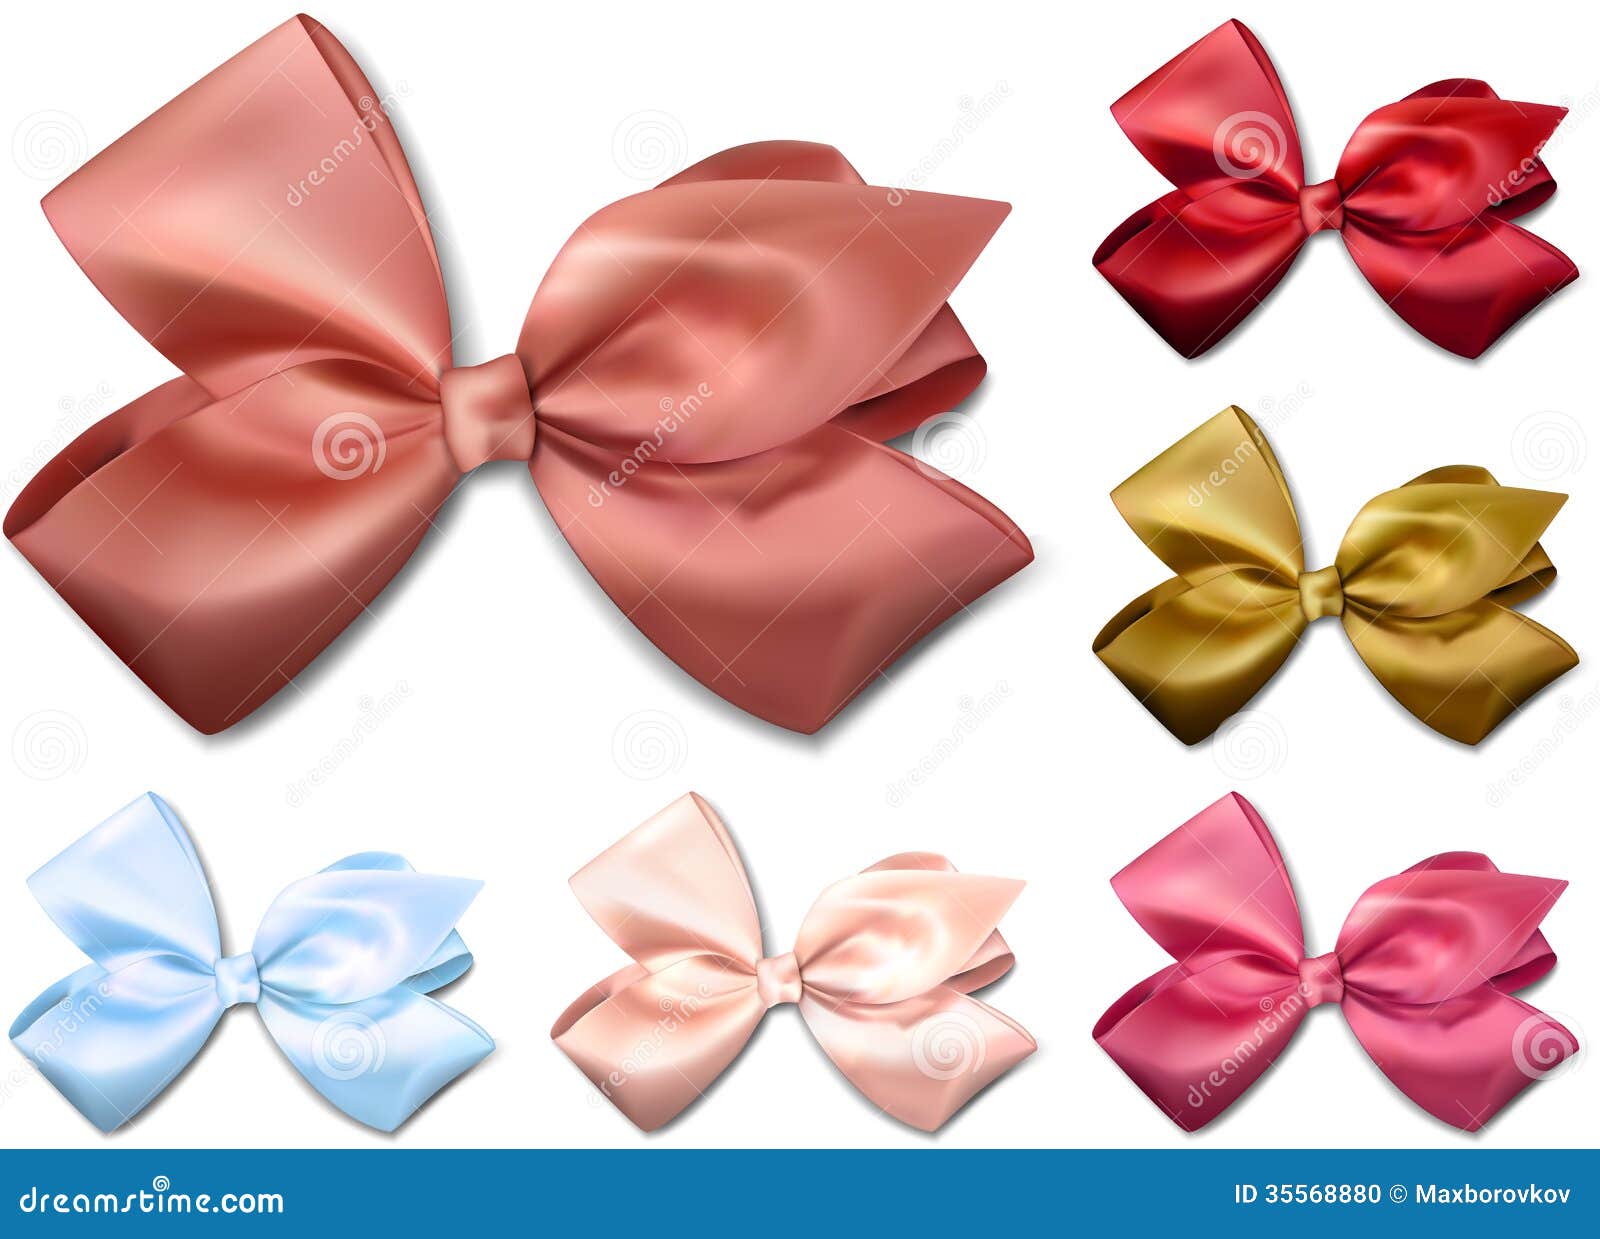 satin color ribbons. gift bows.